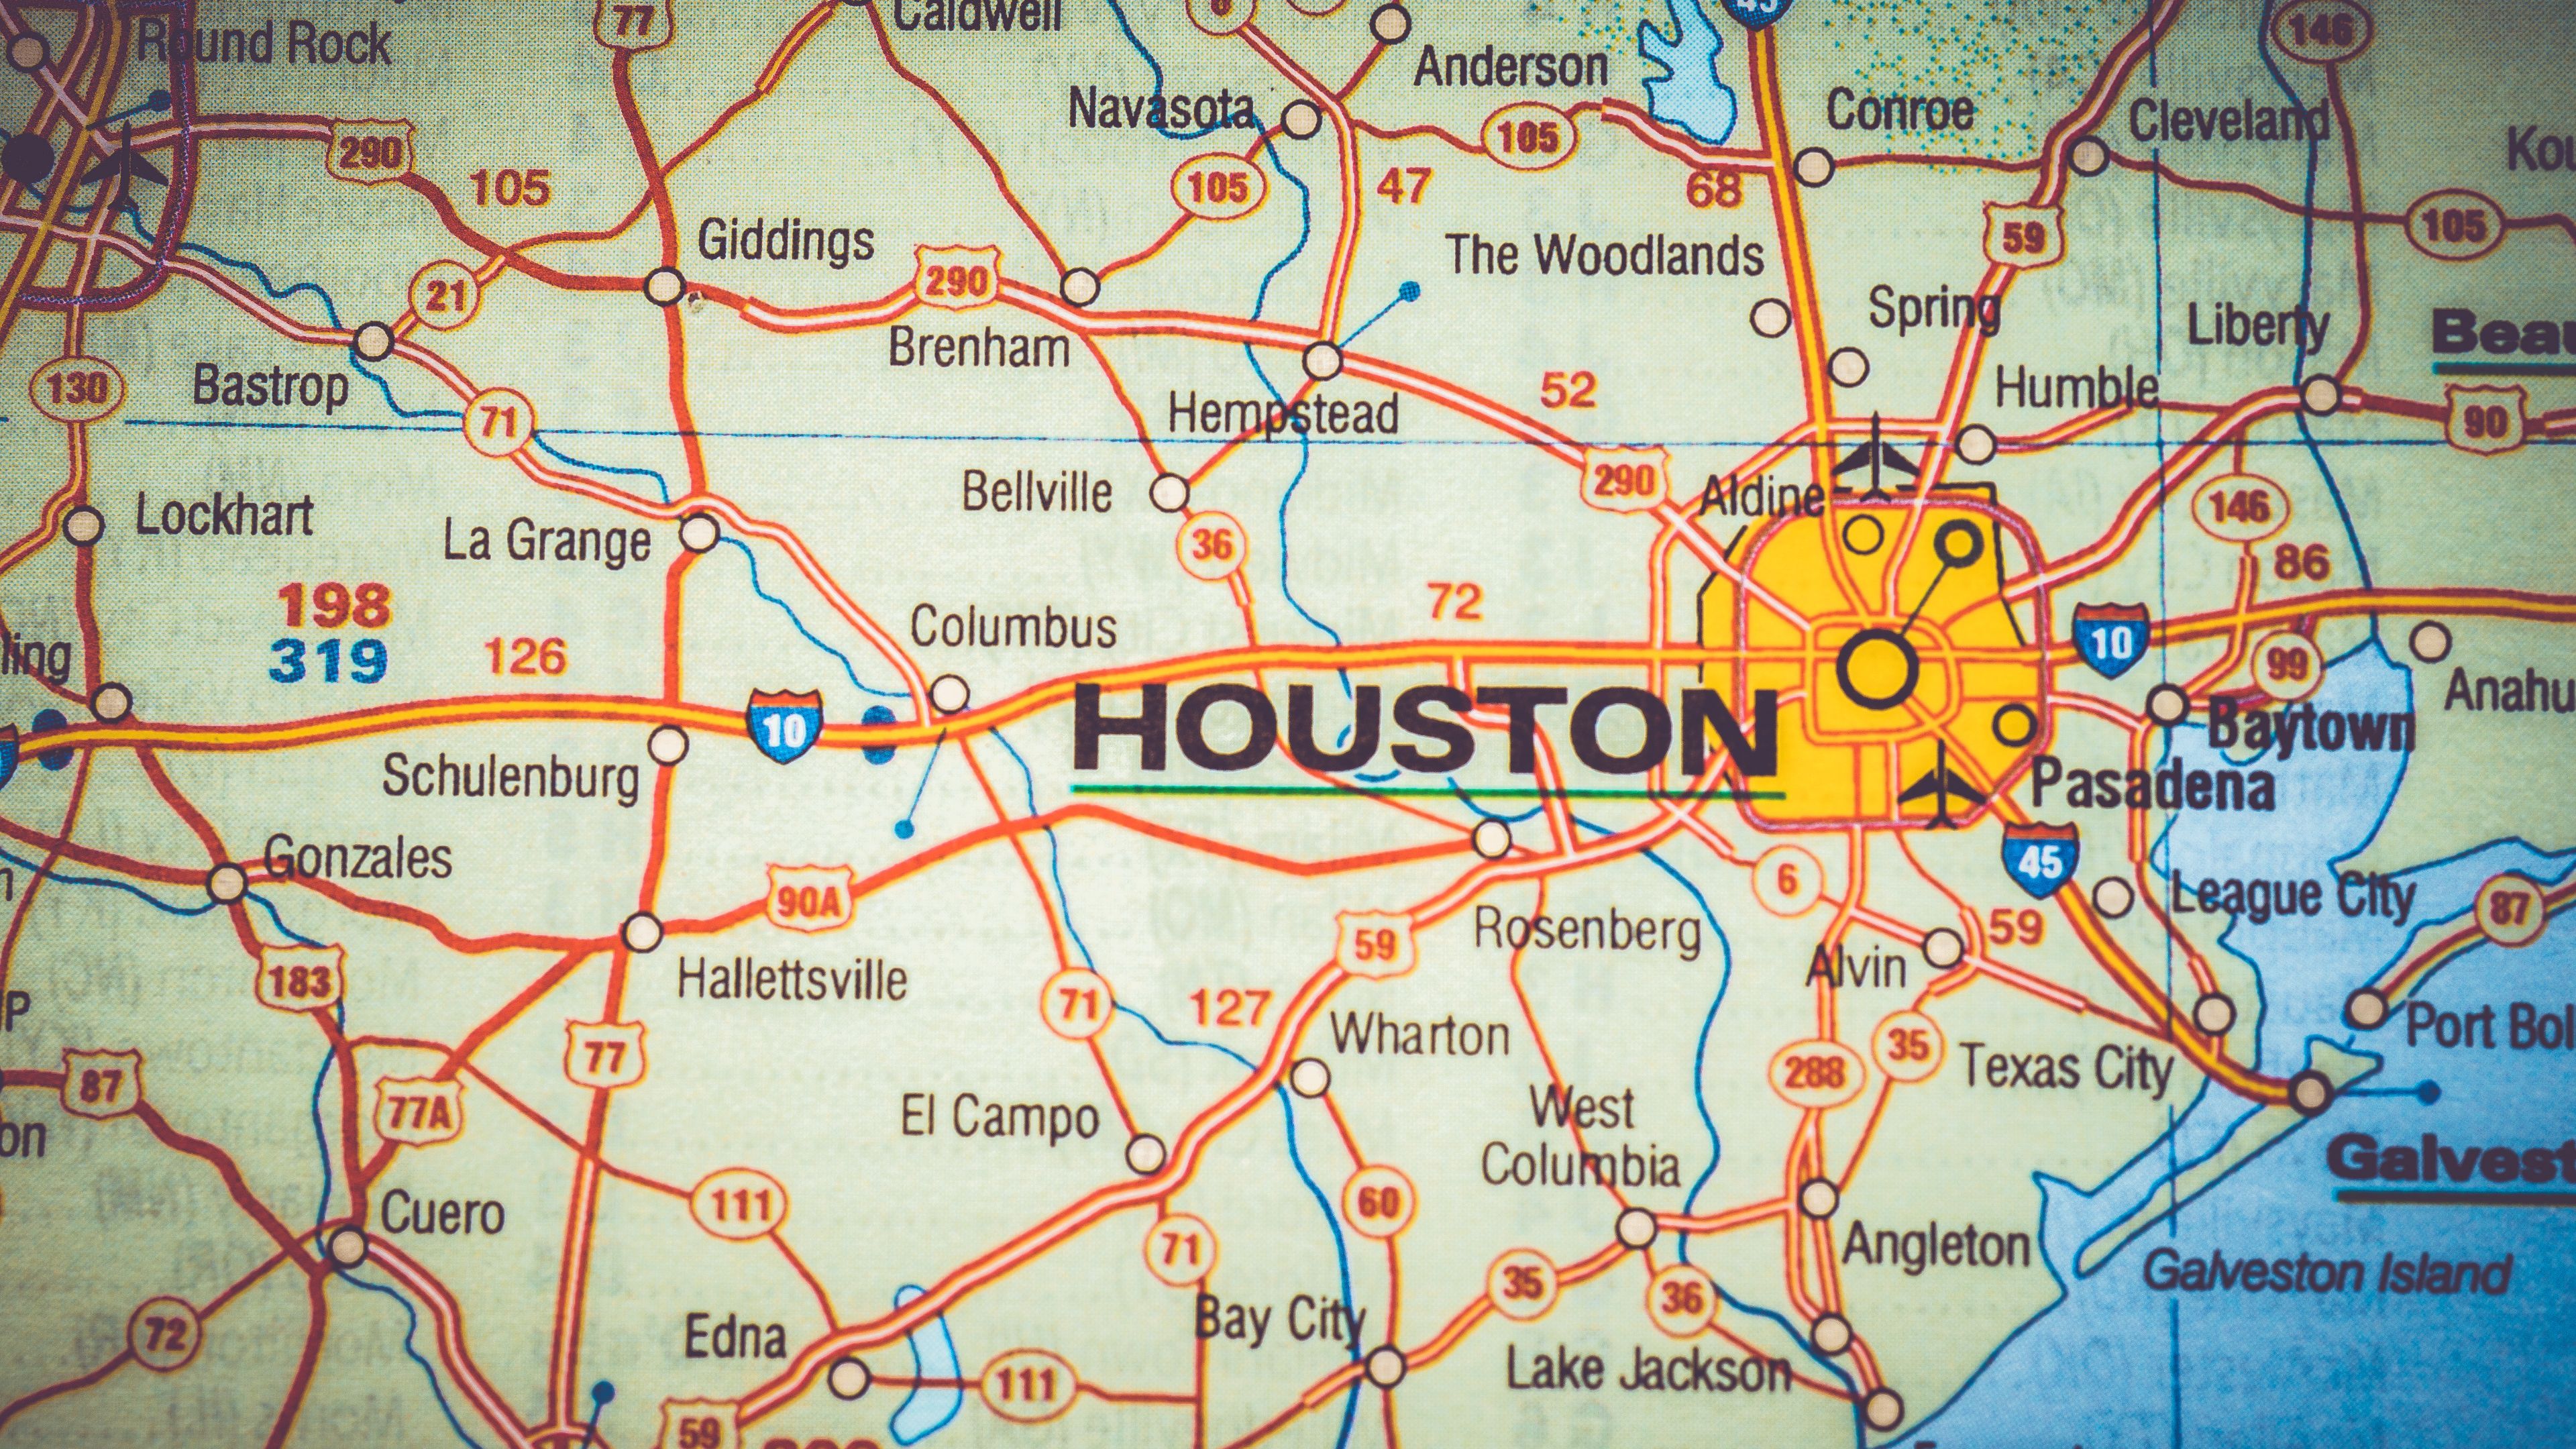 Houston driving guide | Hertz Blog